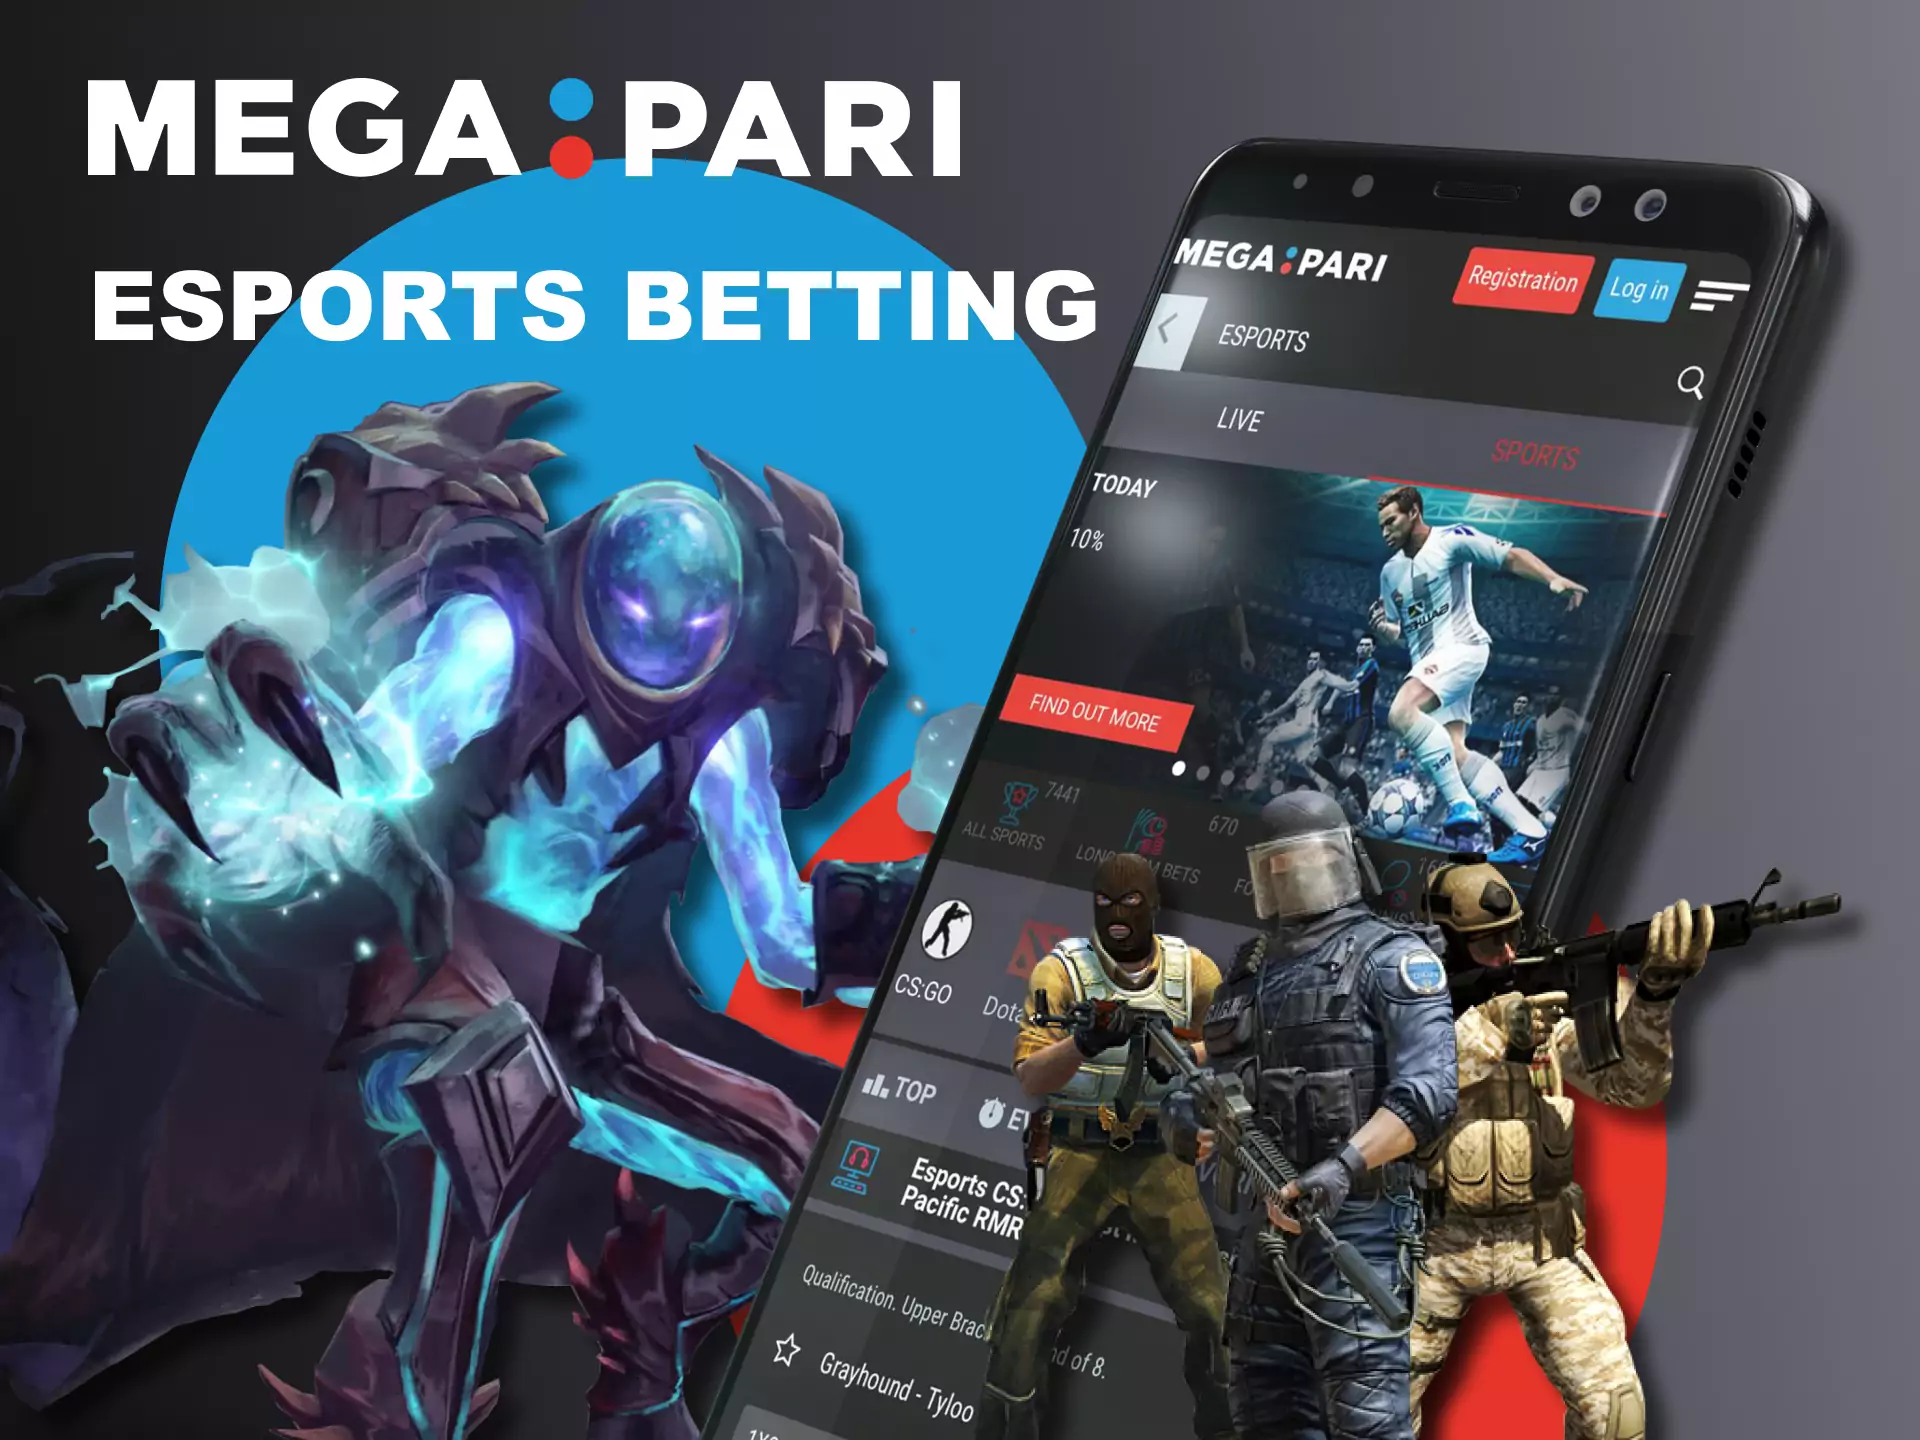 In the Megapari app, bet on esport matches.